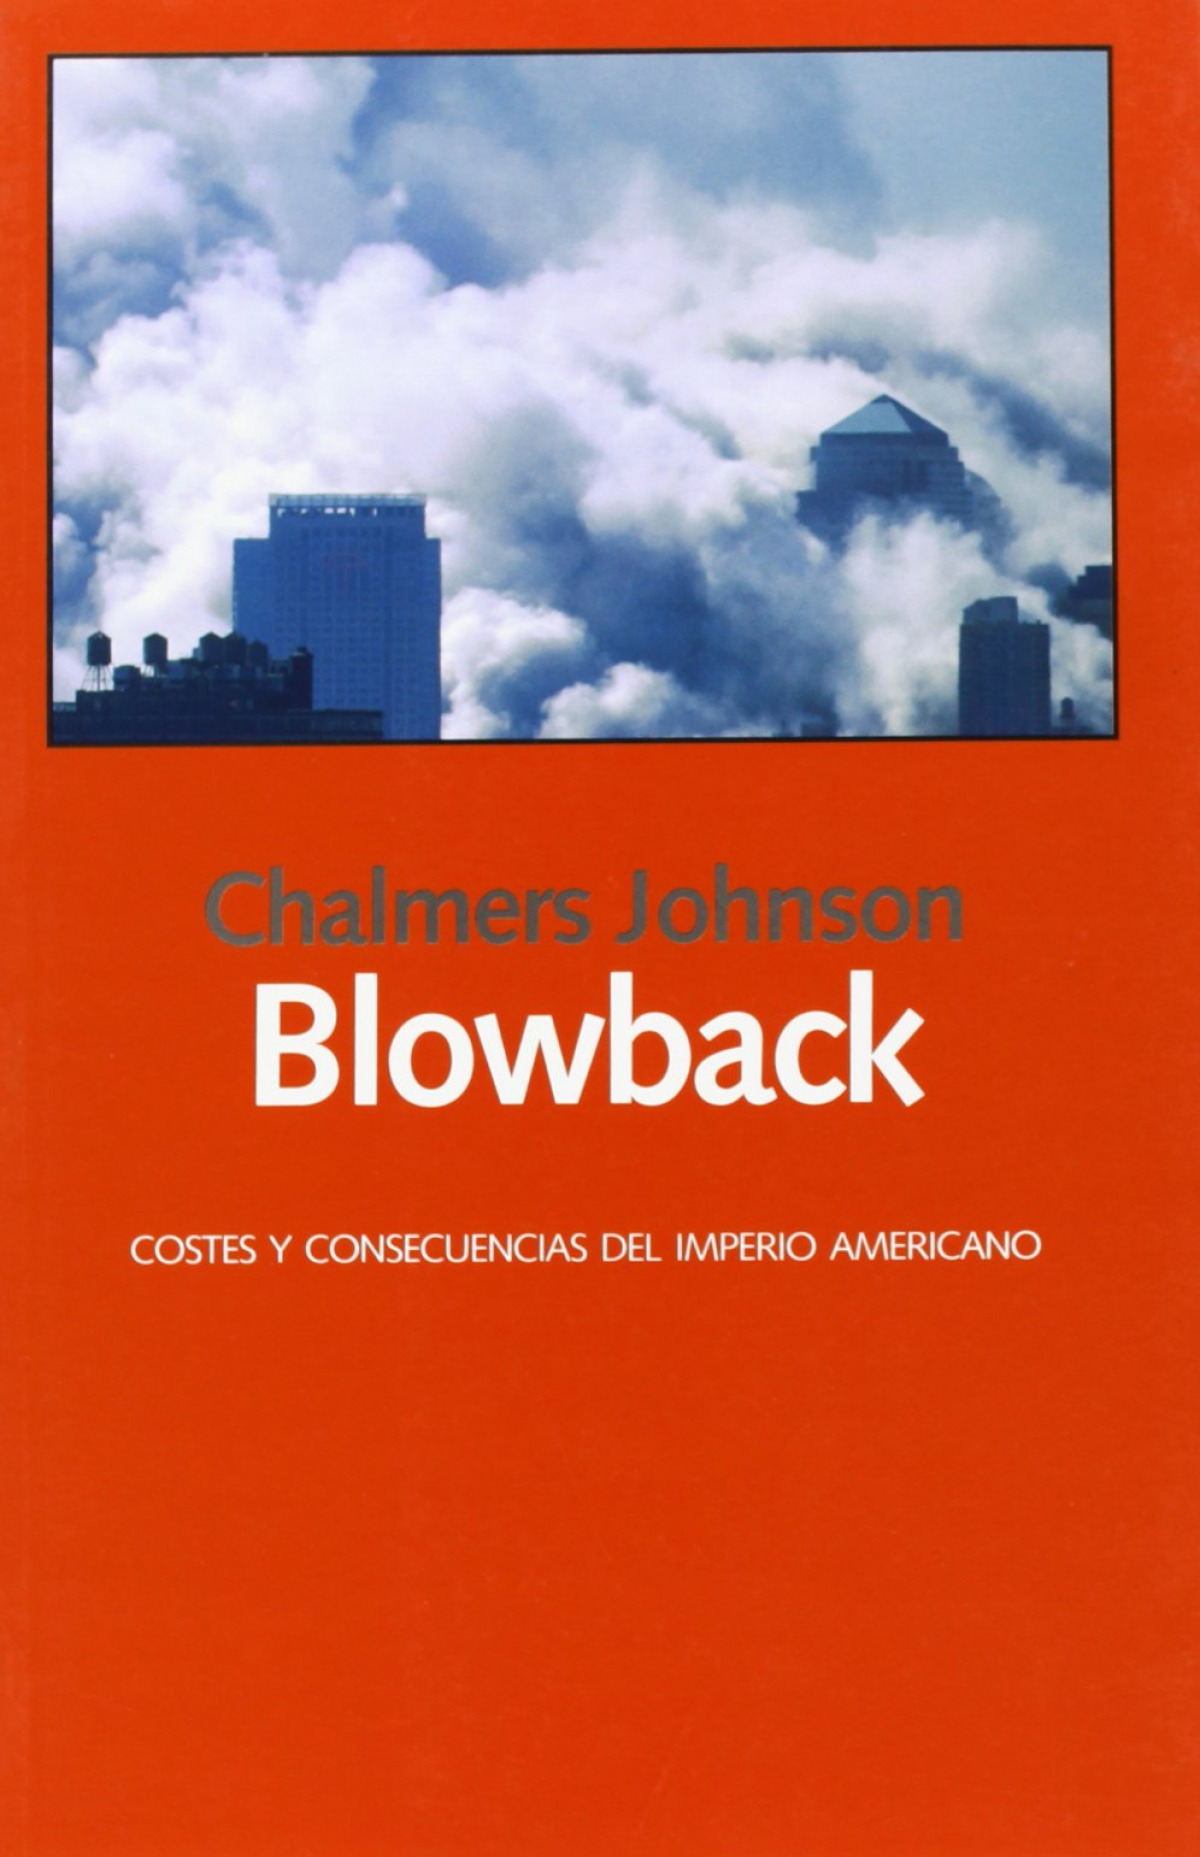 Blowback : costes y consecuencias del imperio americano (Libros Abiertos)